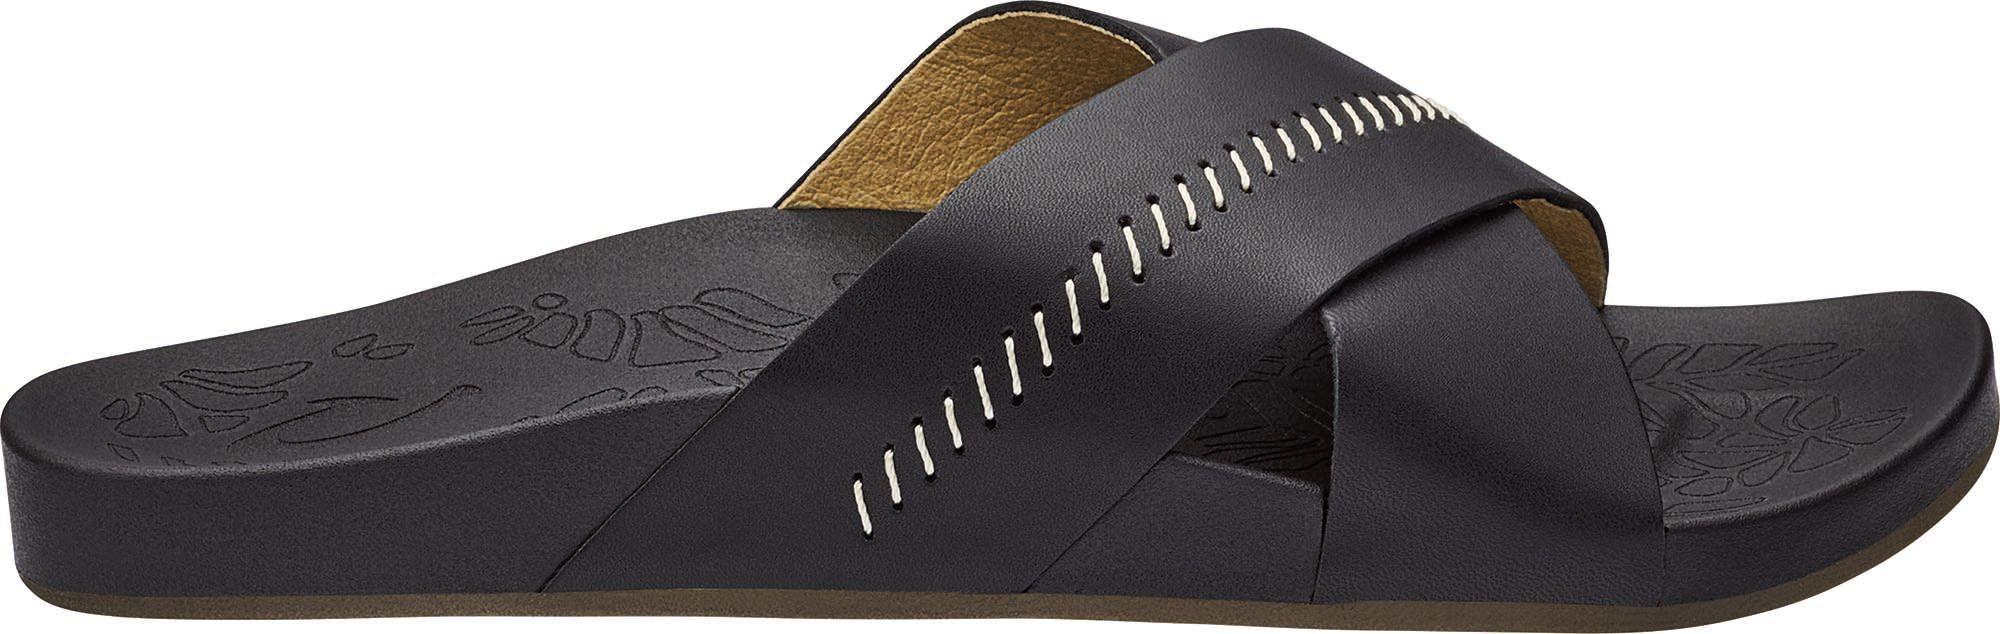 OluKai Kipea Olu Slide Sandal Product Image